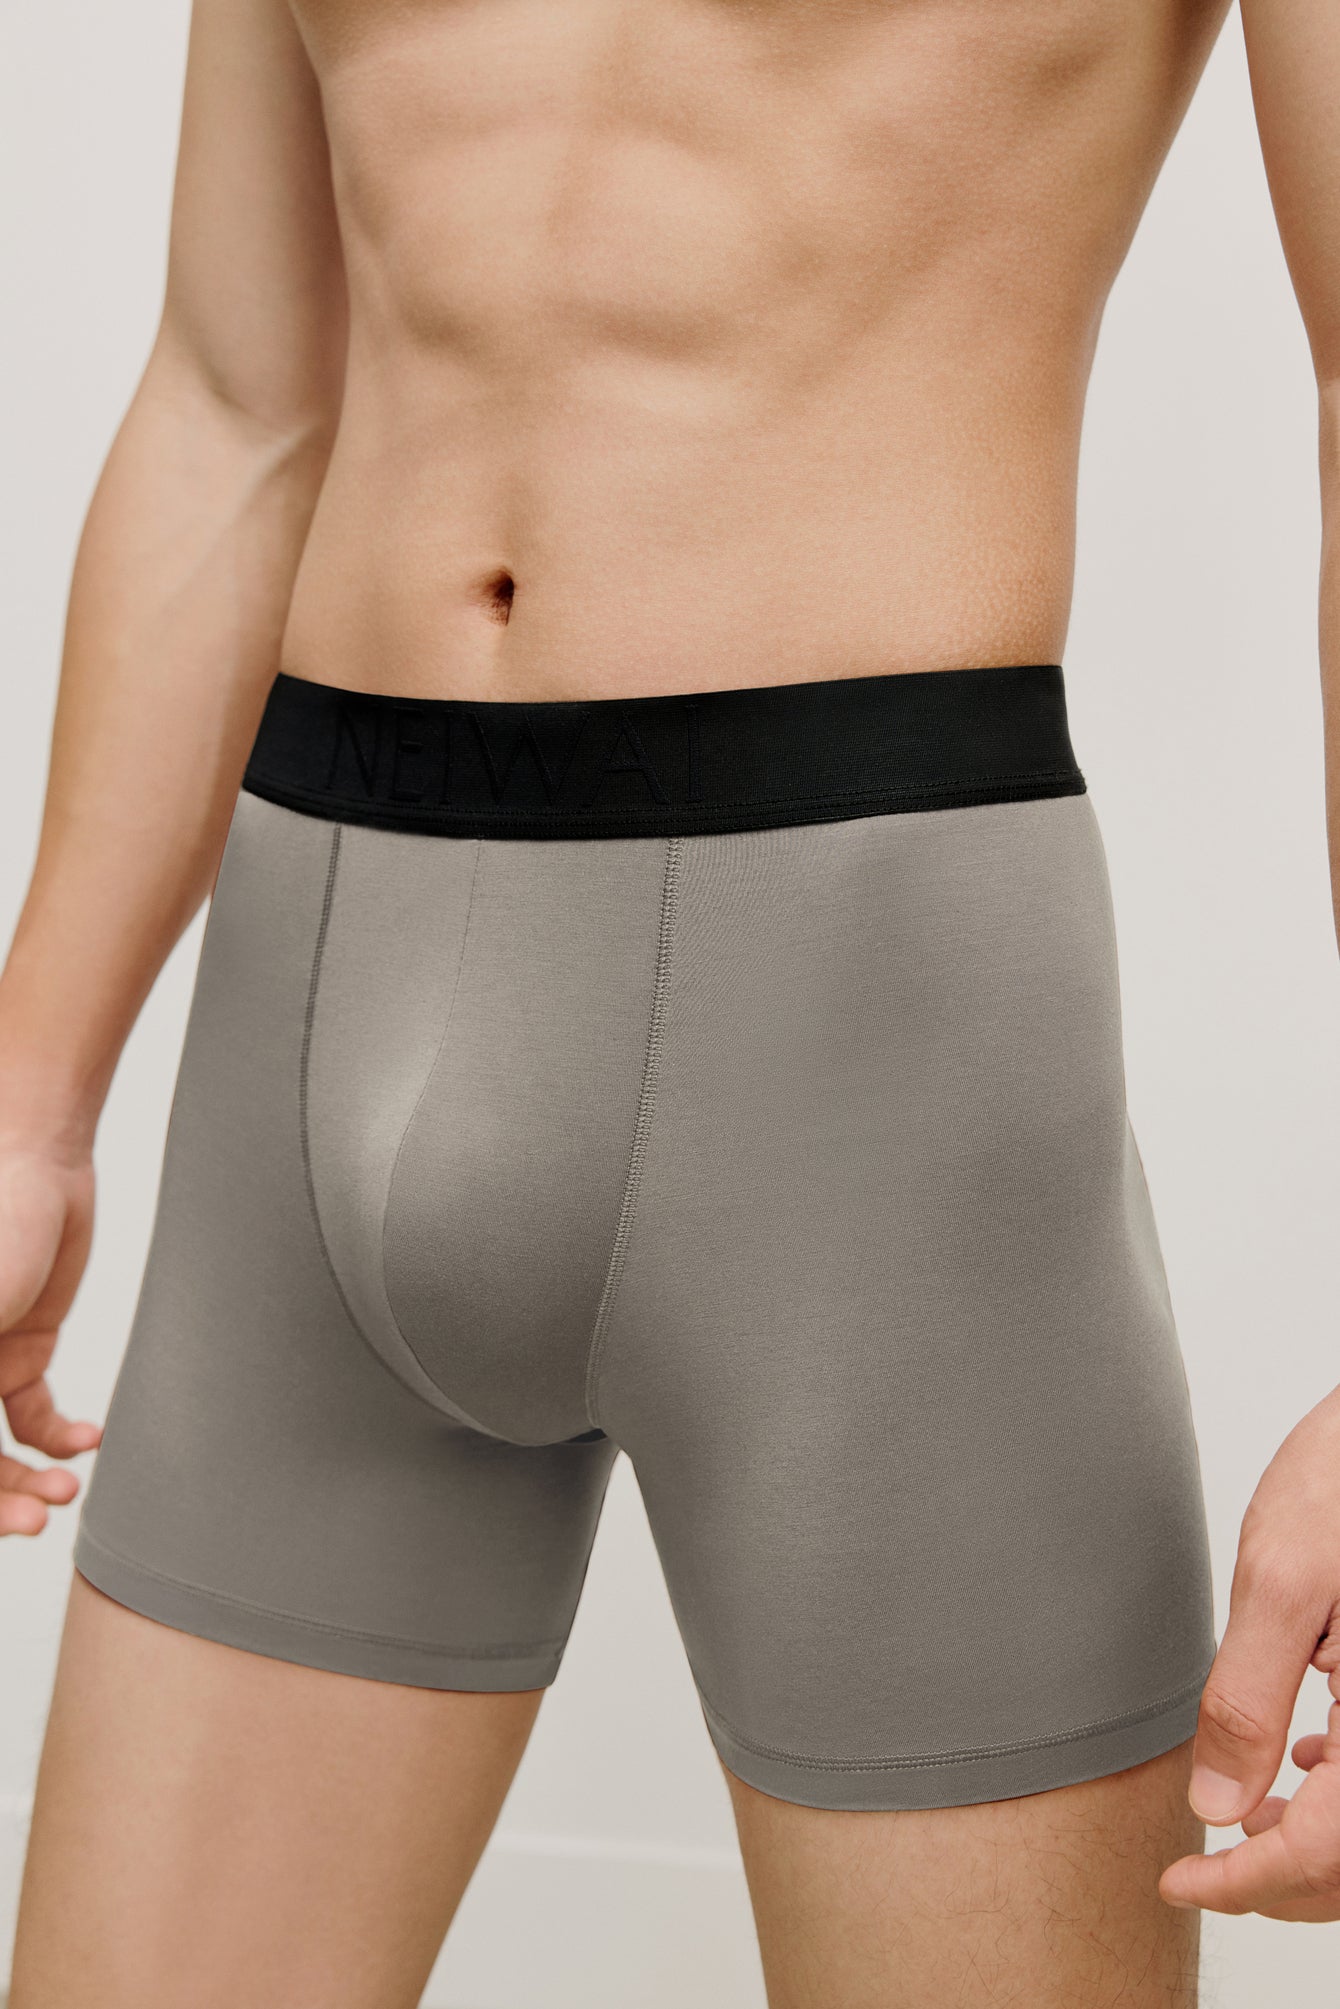 Men's Hanro Underwear from £32